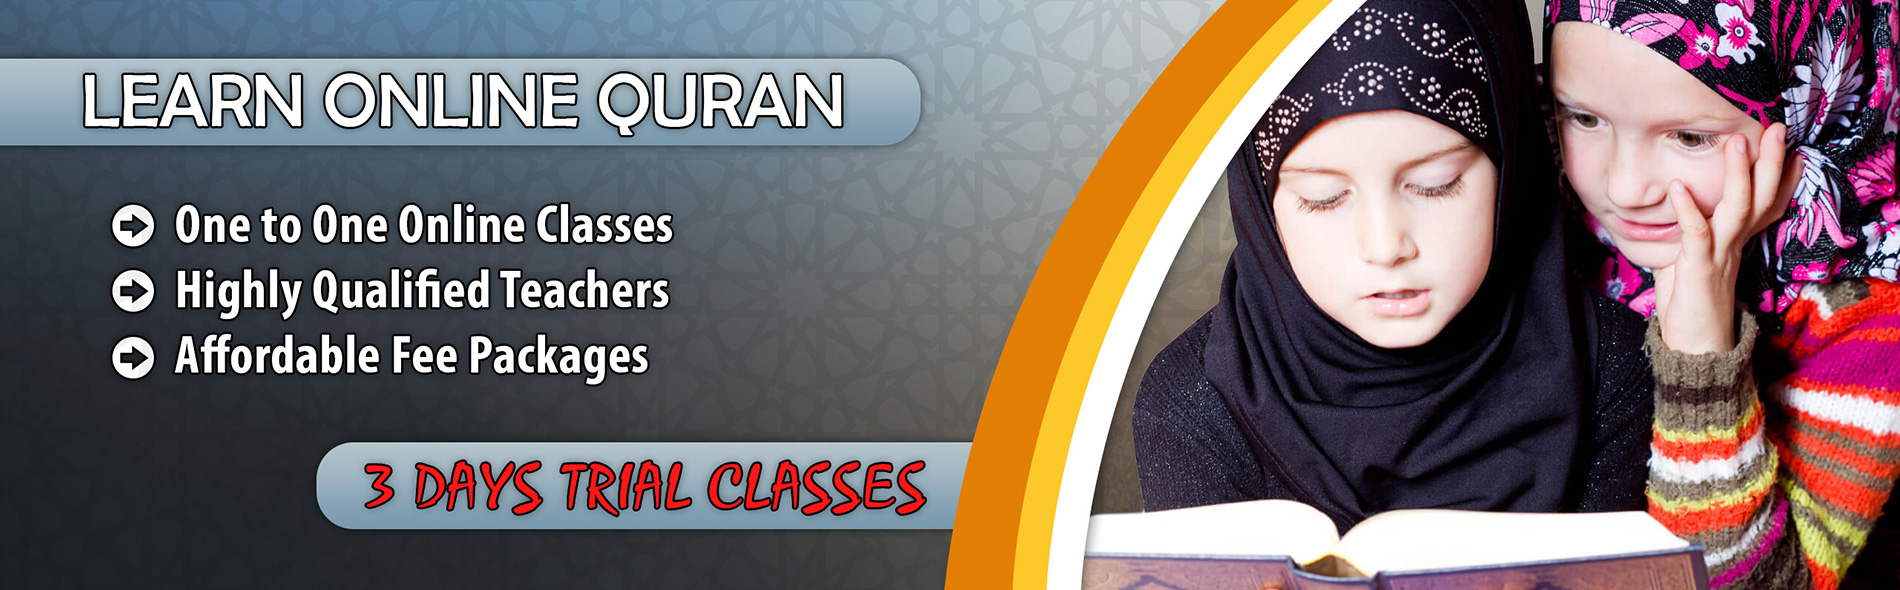 Online Quran Classes UK